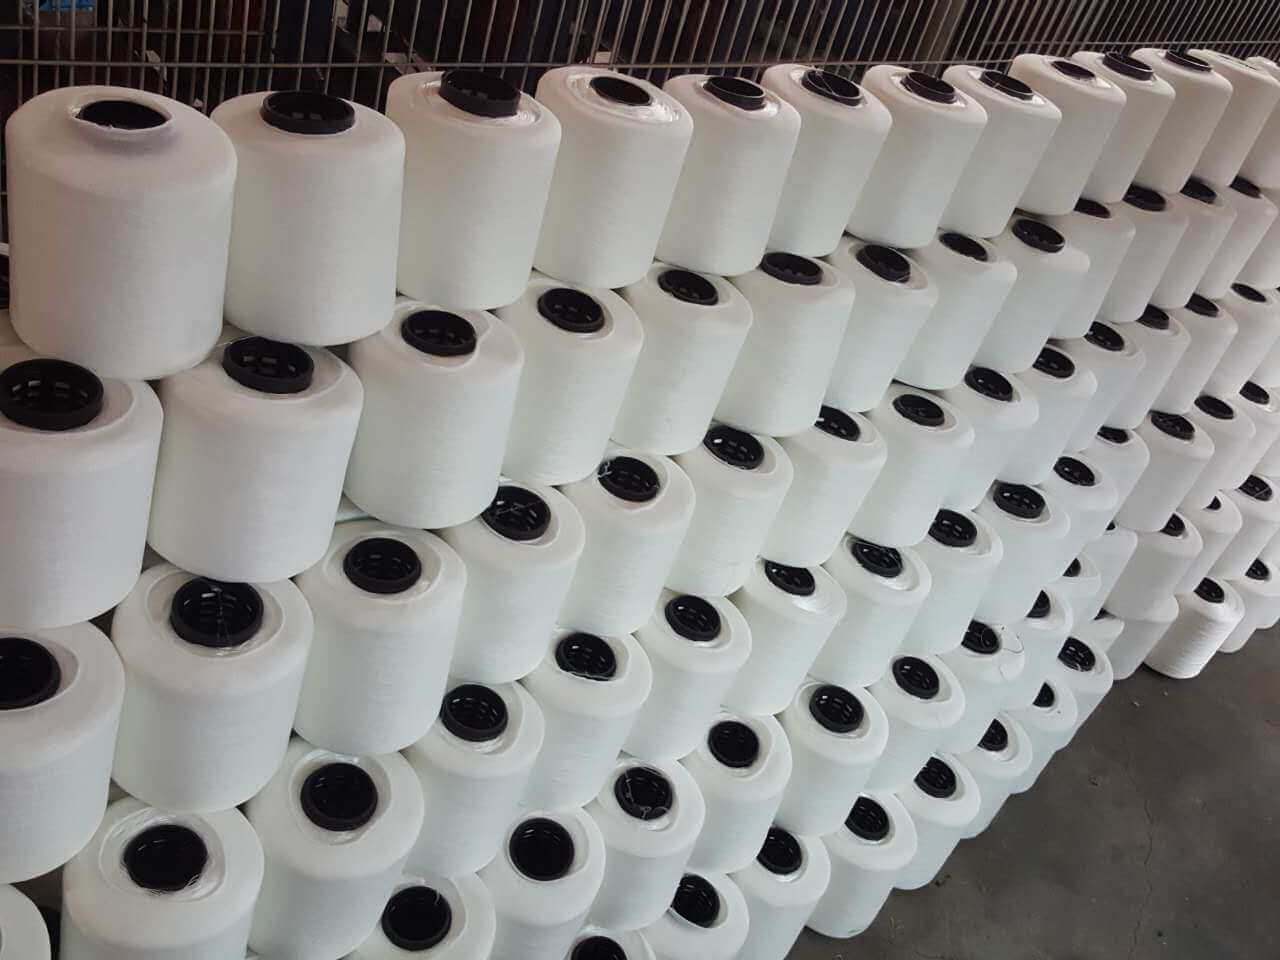 Malezya,Hindistan ve Çin menşeli Polyester İplik İthalatı İçin Damping Soruşturması Açıldı